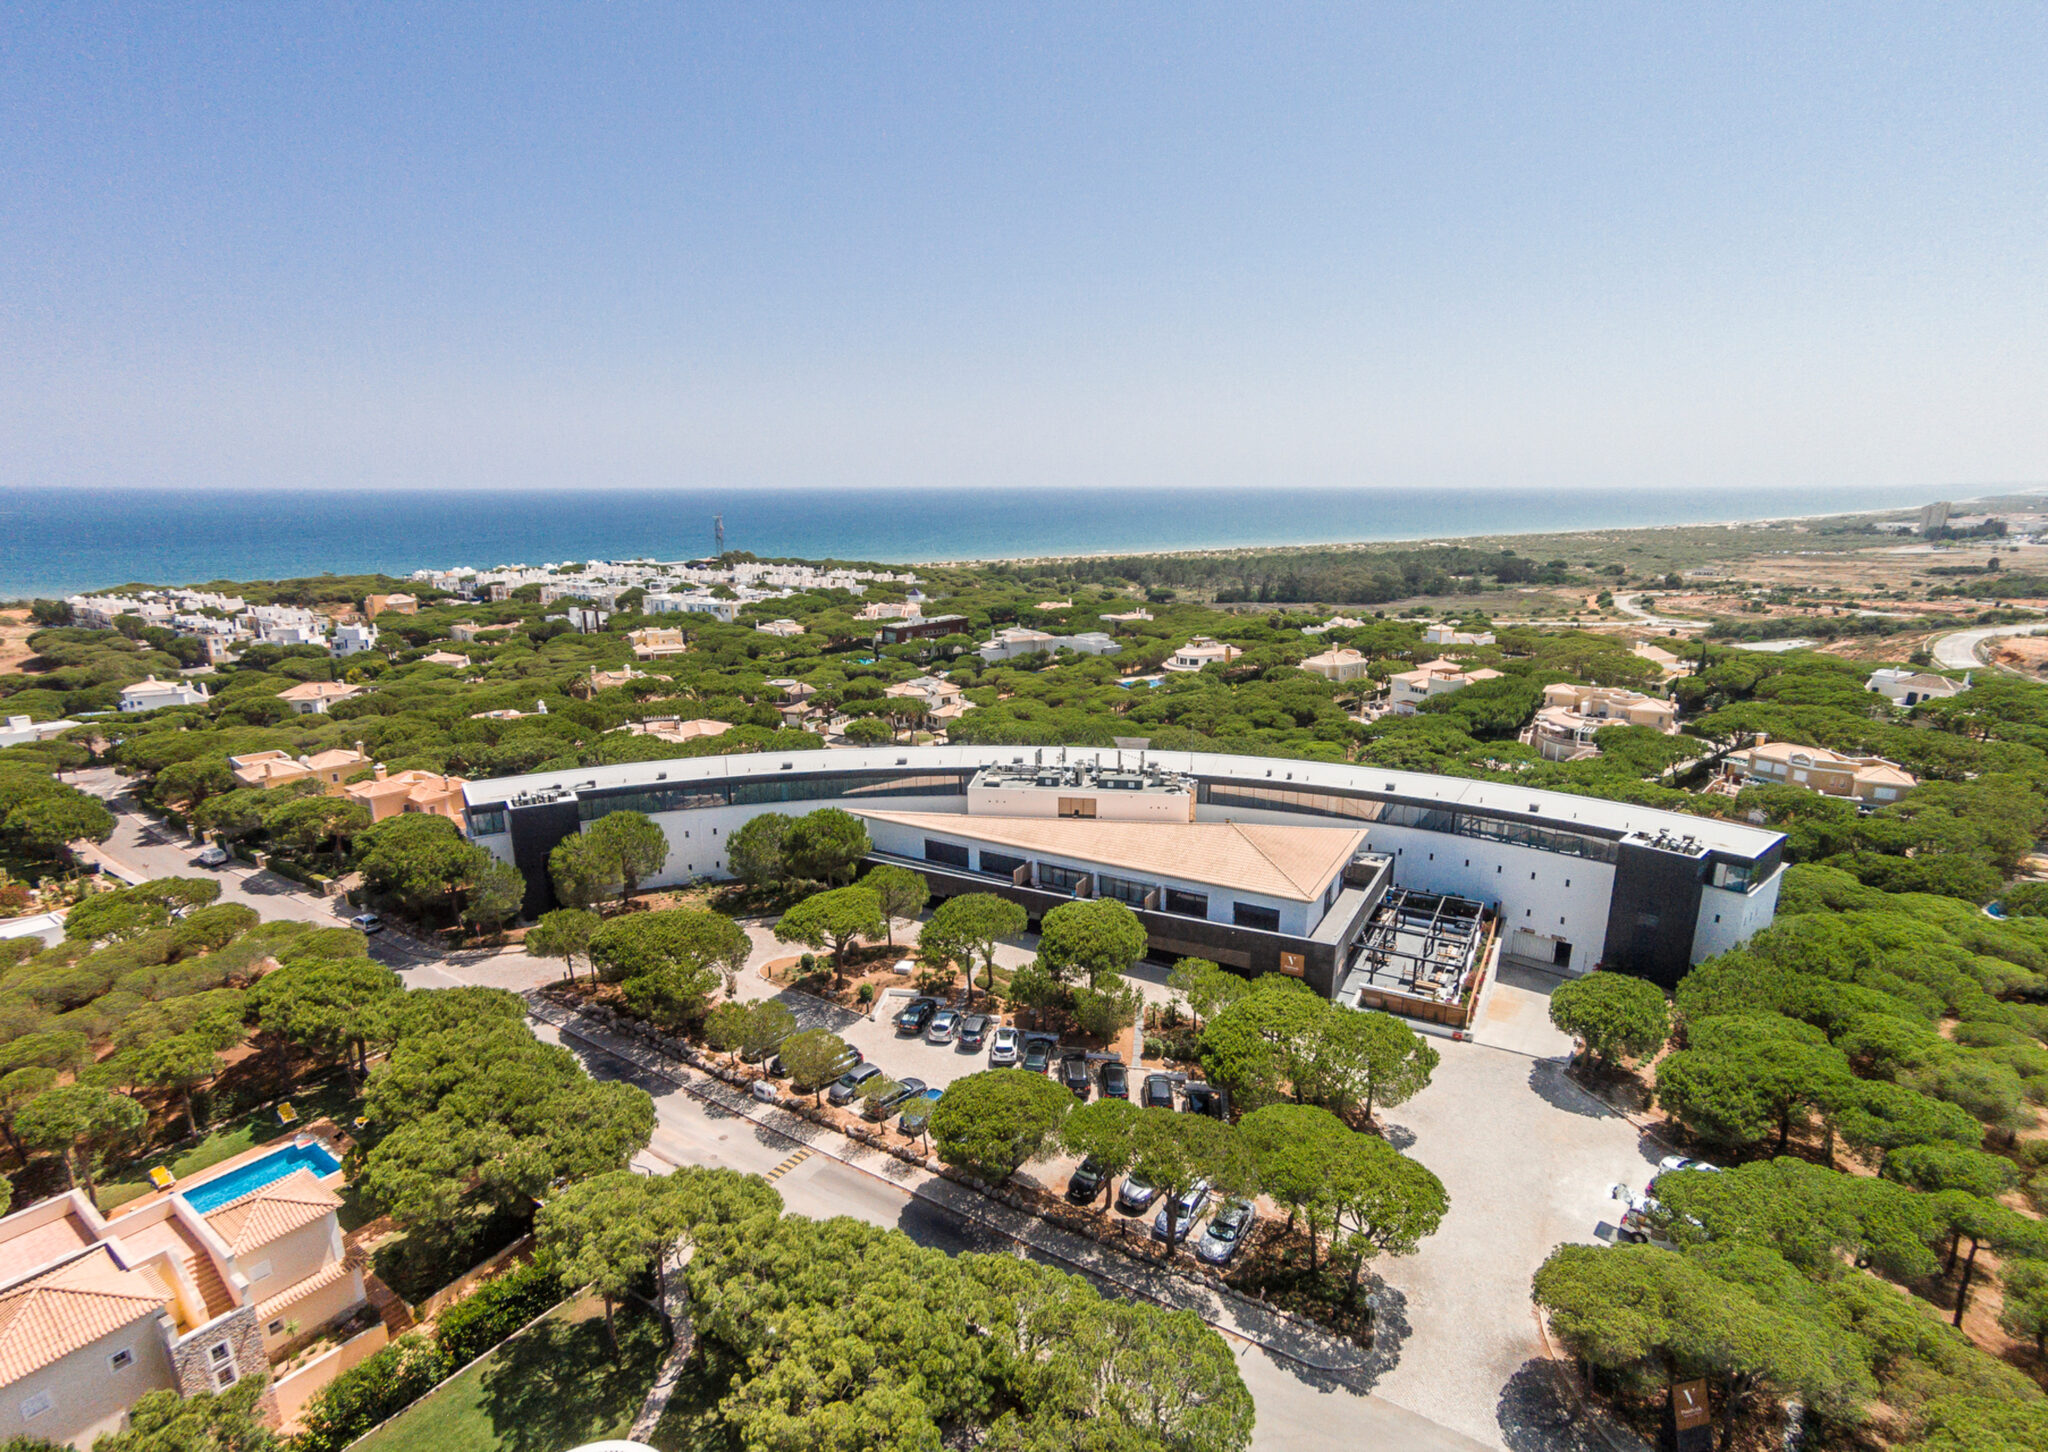 Birdseye view of Praia Verde Boutique Hotel